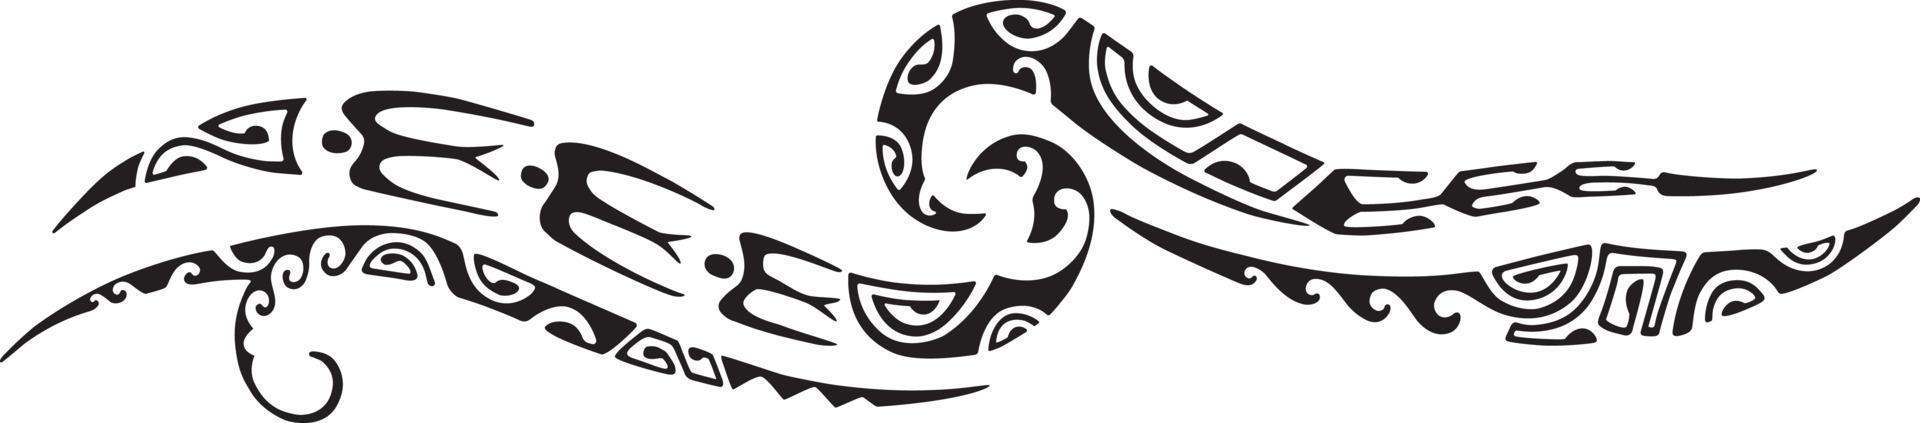 tatuering maori design. etnisk orientalisk prydnad. konst stam- tatuering. vektor skiss av en tatuering maori